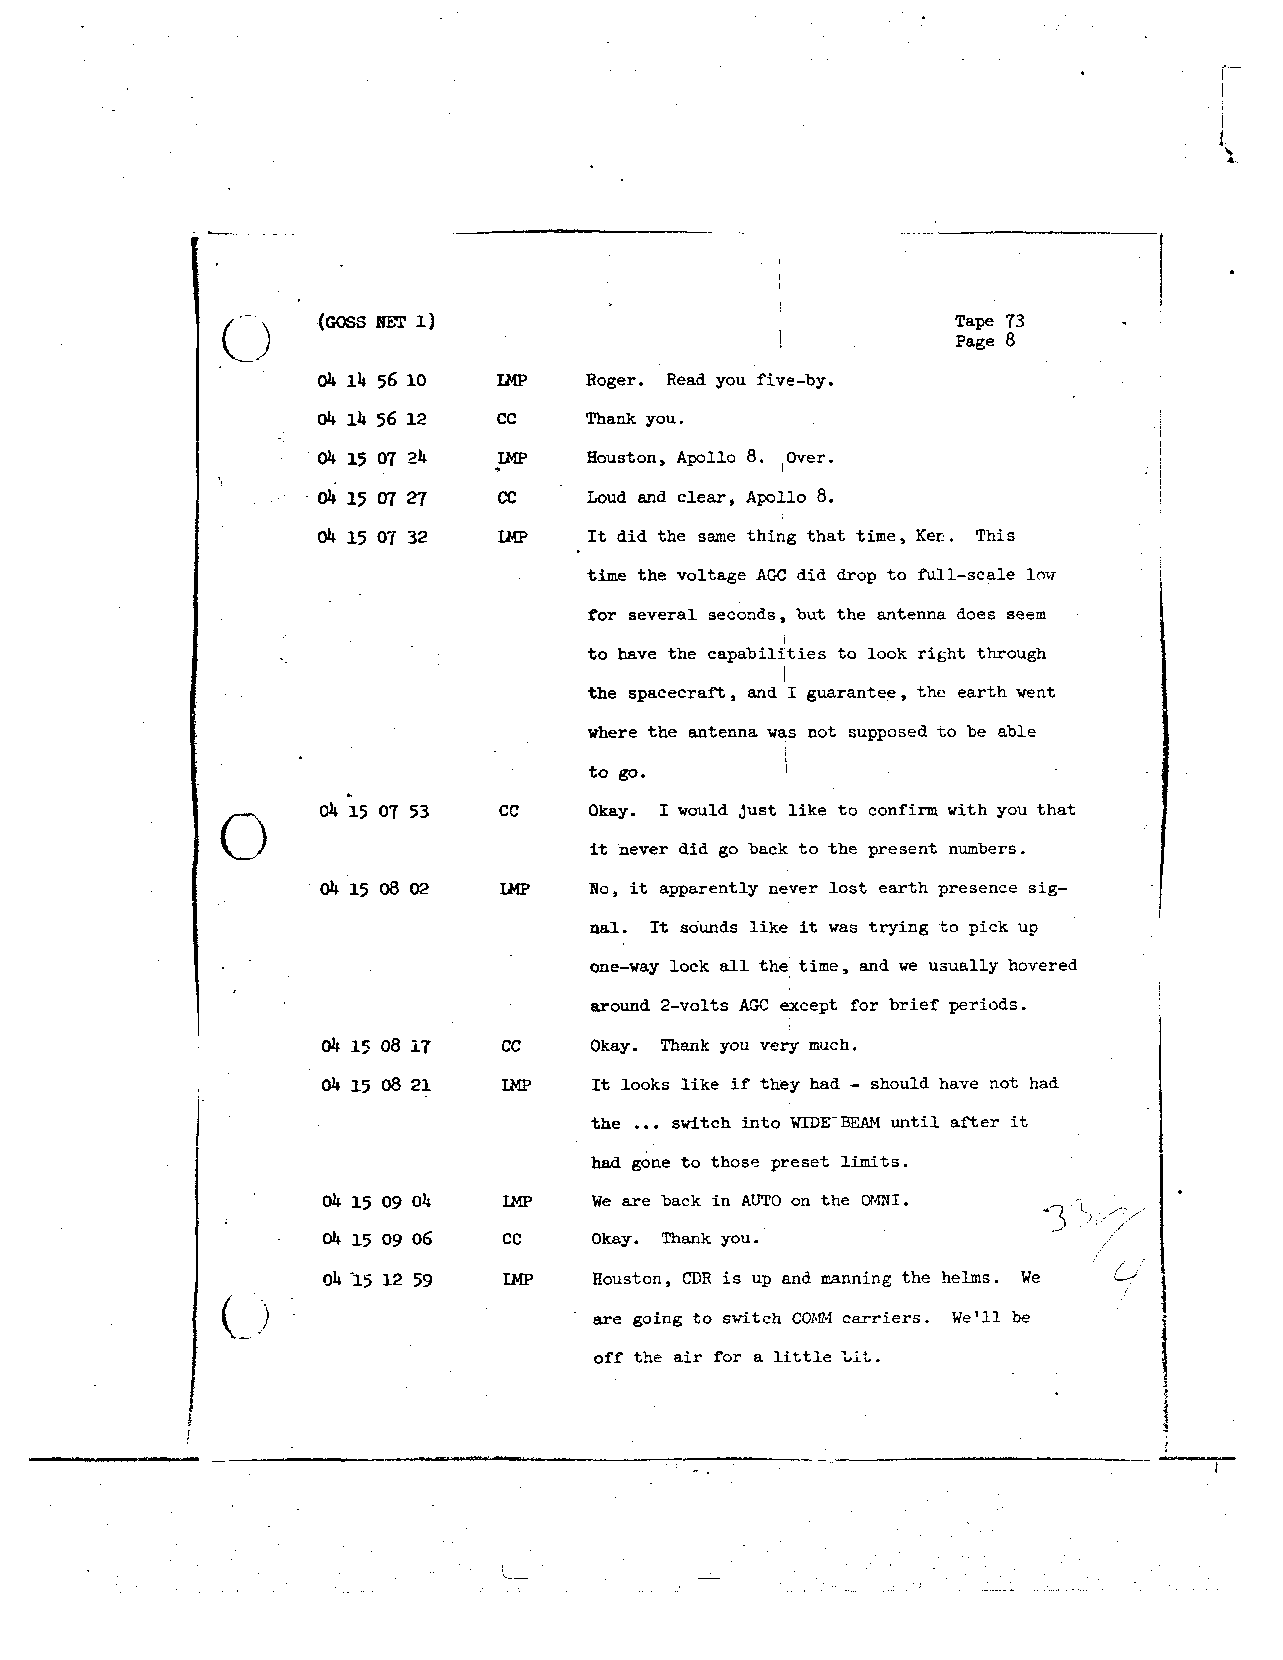 Page 594 of Apollo 8’s original transcript